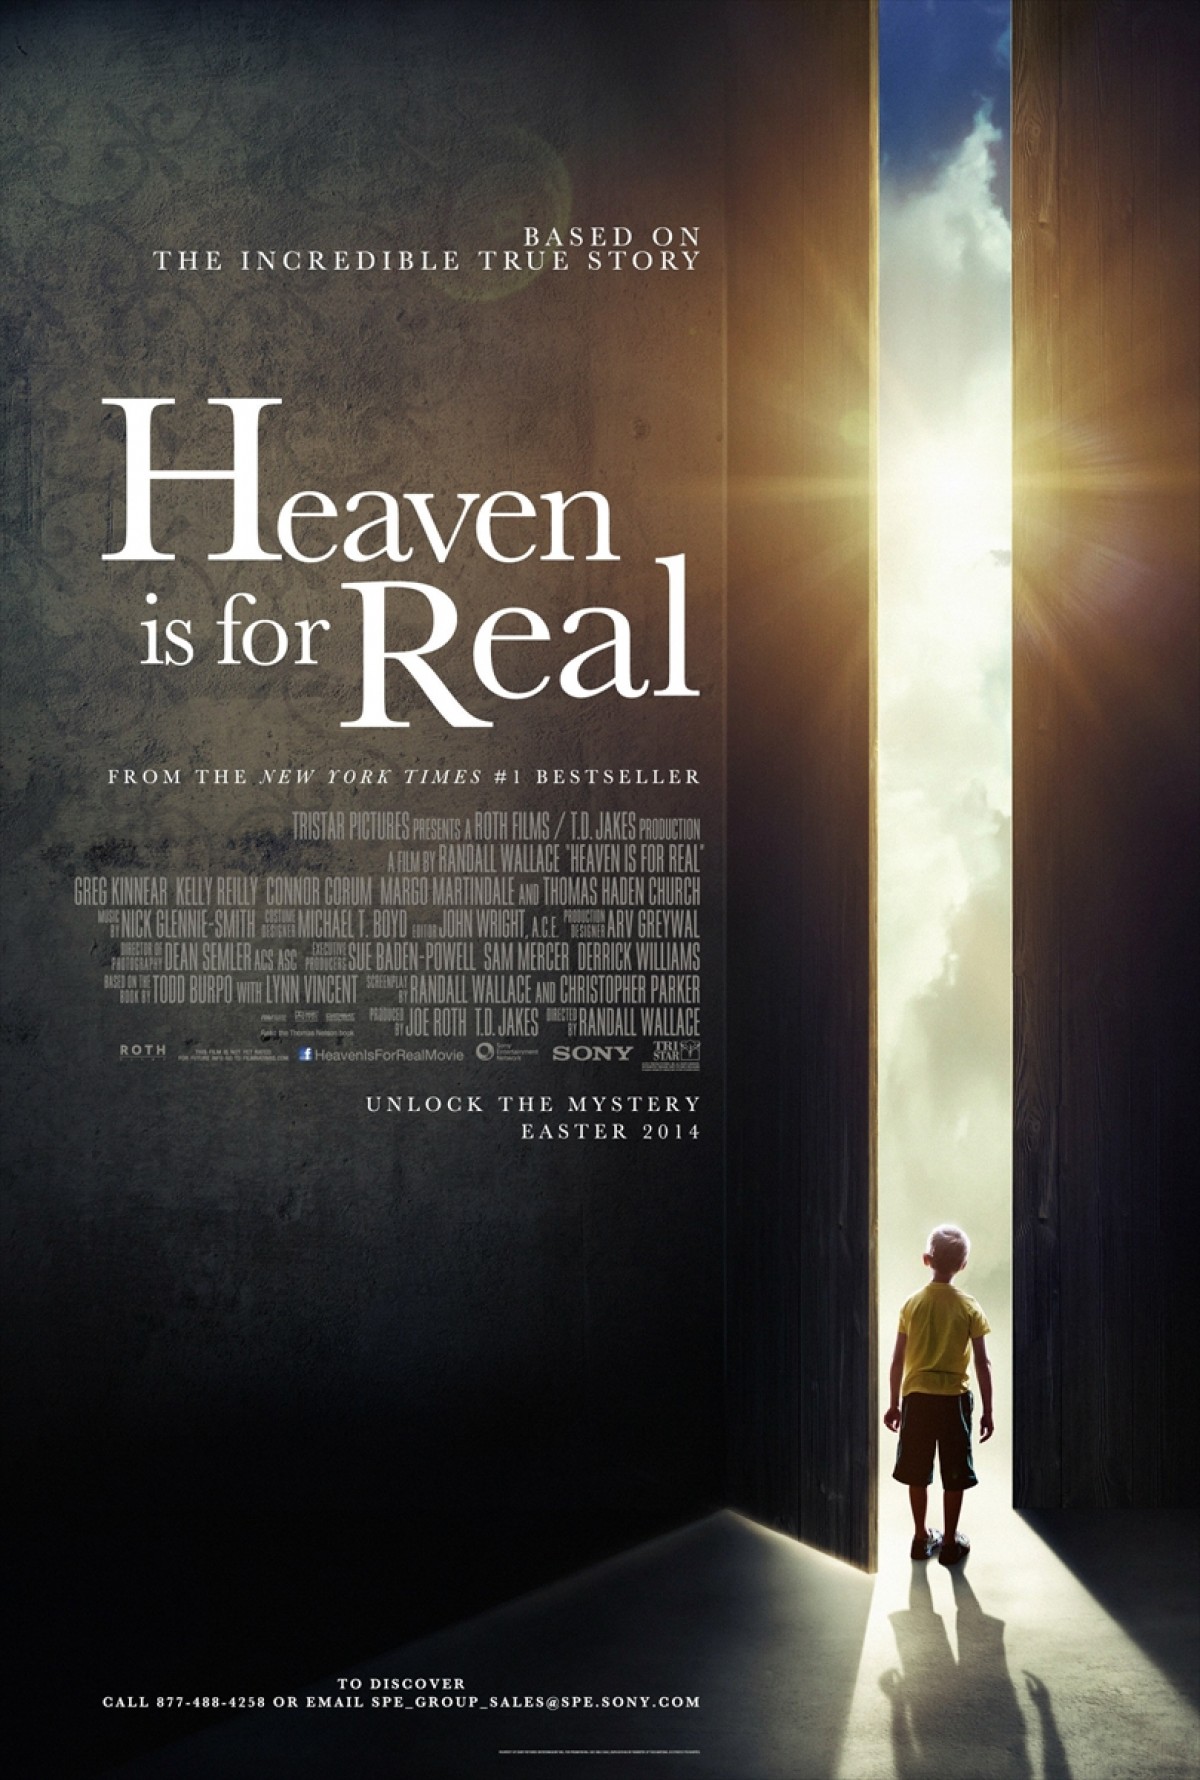 ハリウッドでクリスチャン映画がブーム　神父対象のマーケティング試写も実施